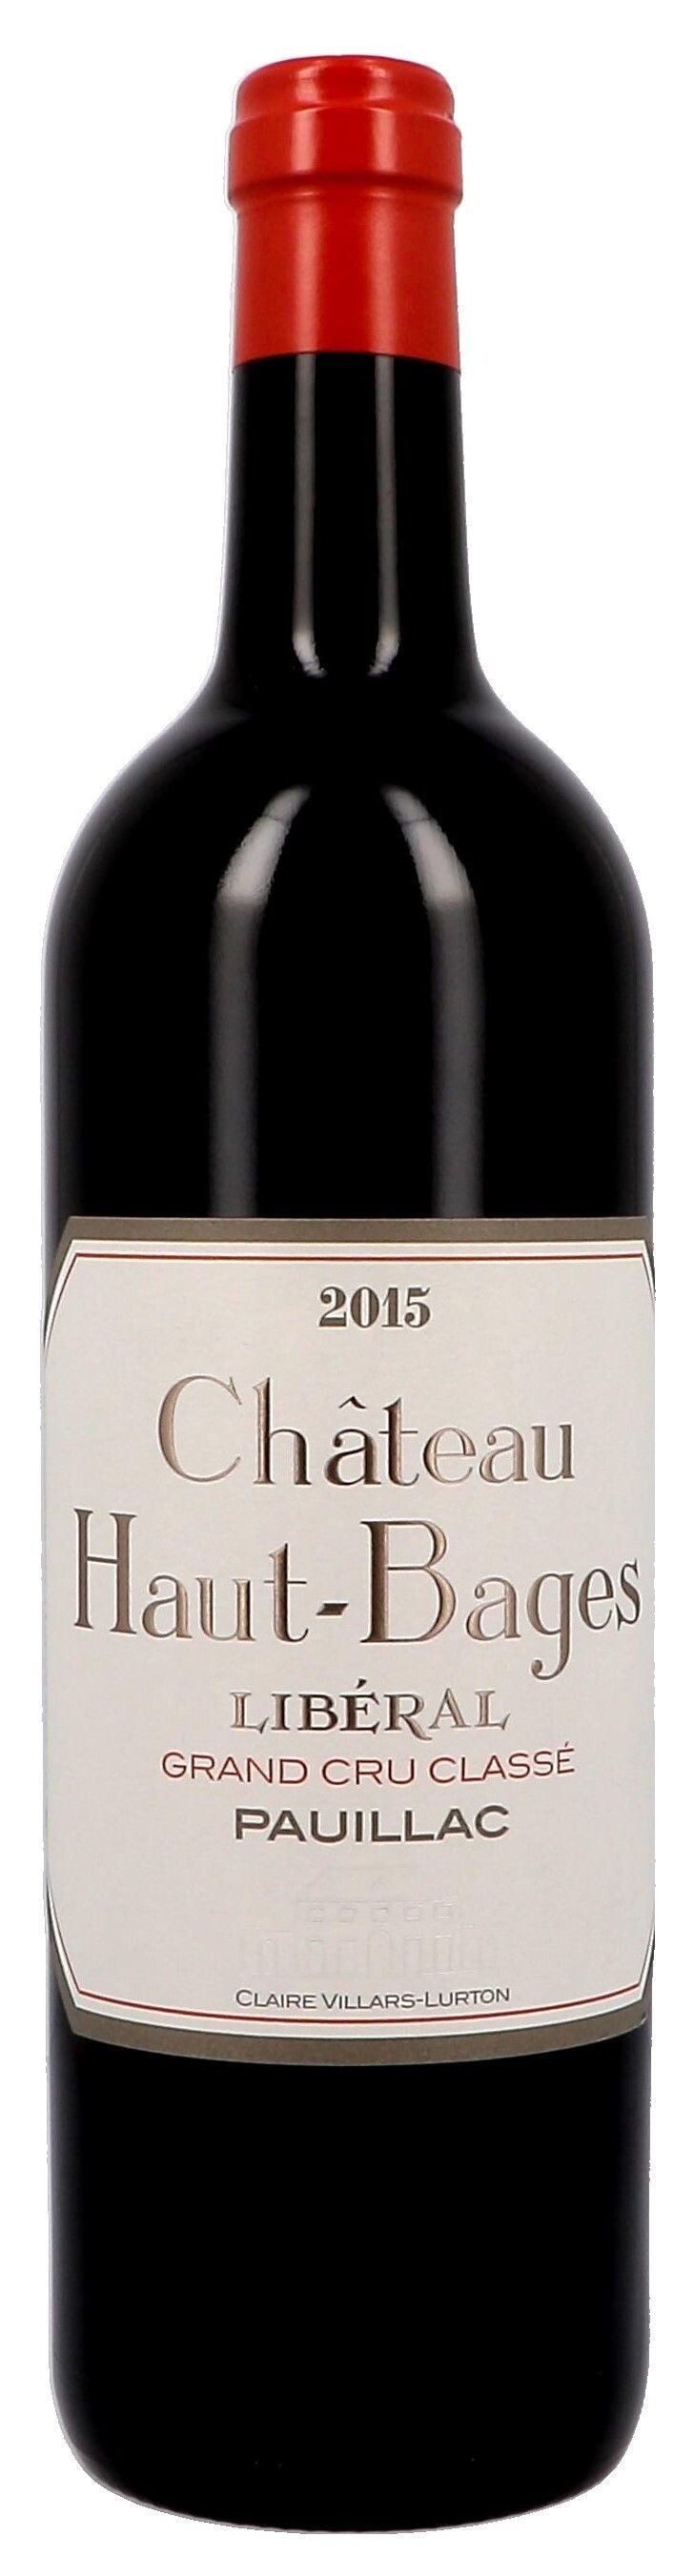 Chateau Haut-Bages Liberal 75cl 2015 Pauillac 5eme Cru Classe (Wijnen)